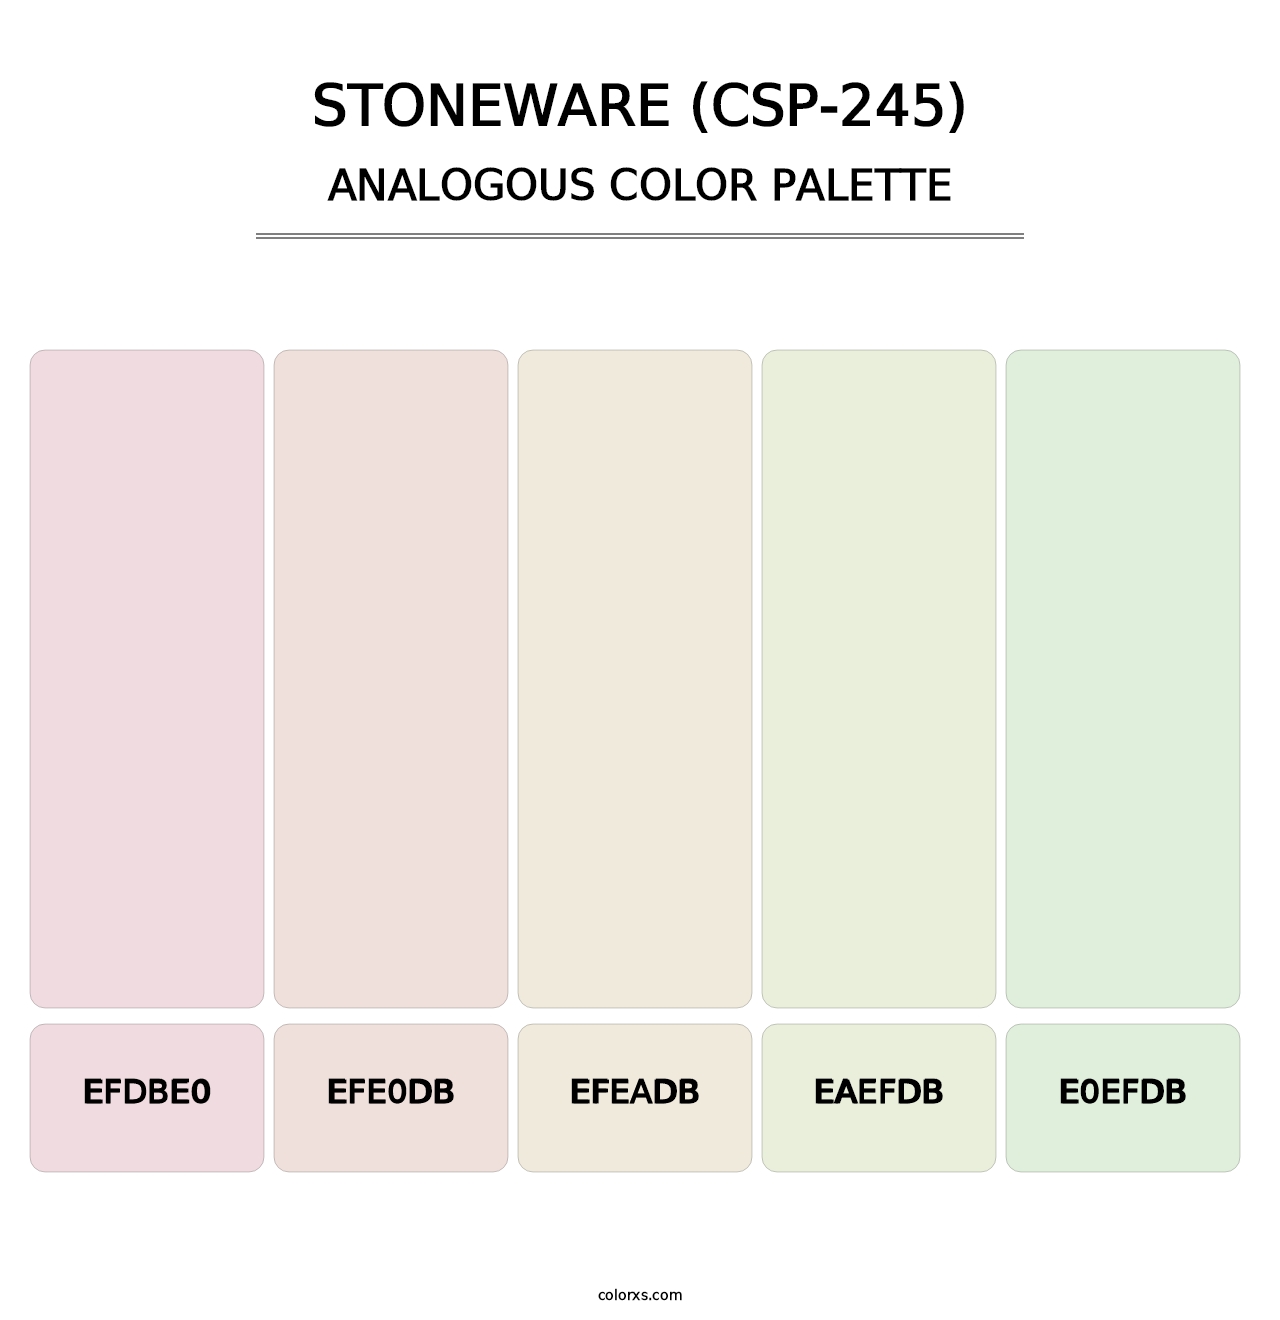 Stoneware (CSP-245) - Analogous Color Palette